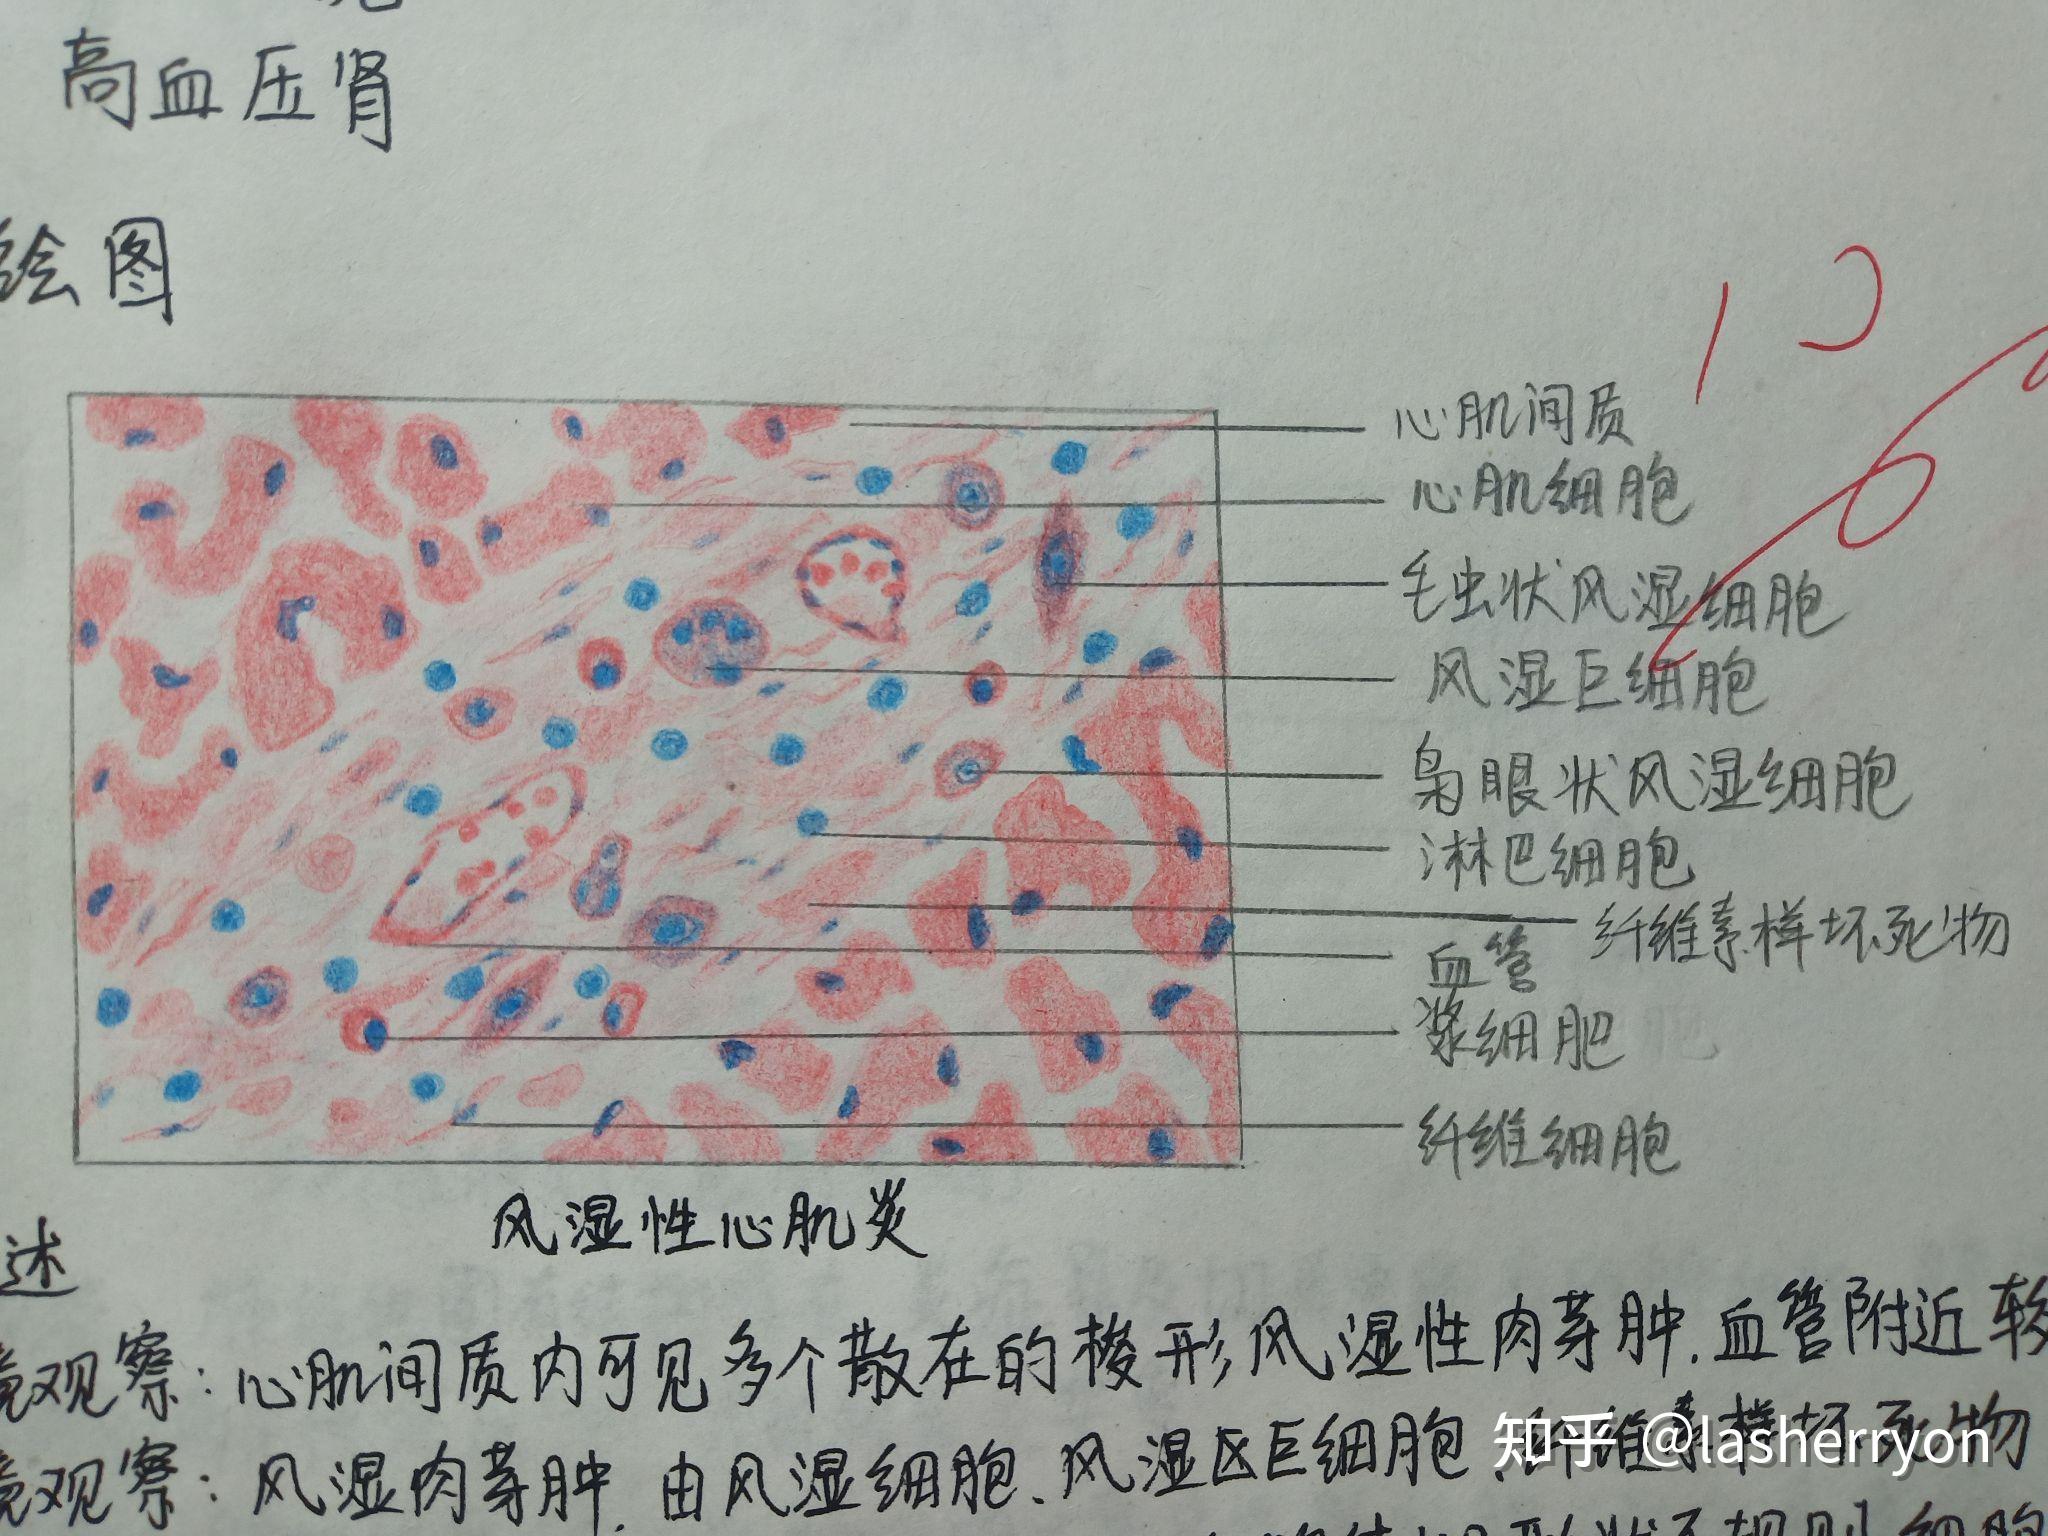 肌纤维红蓝铅笔图图片